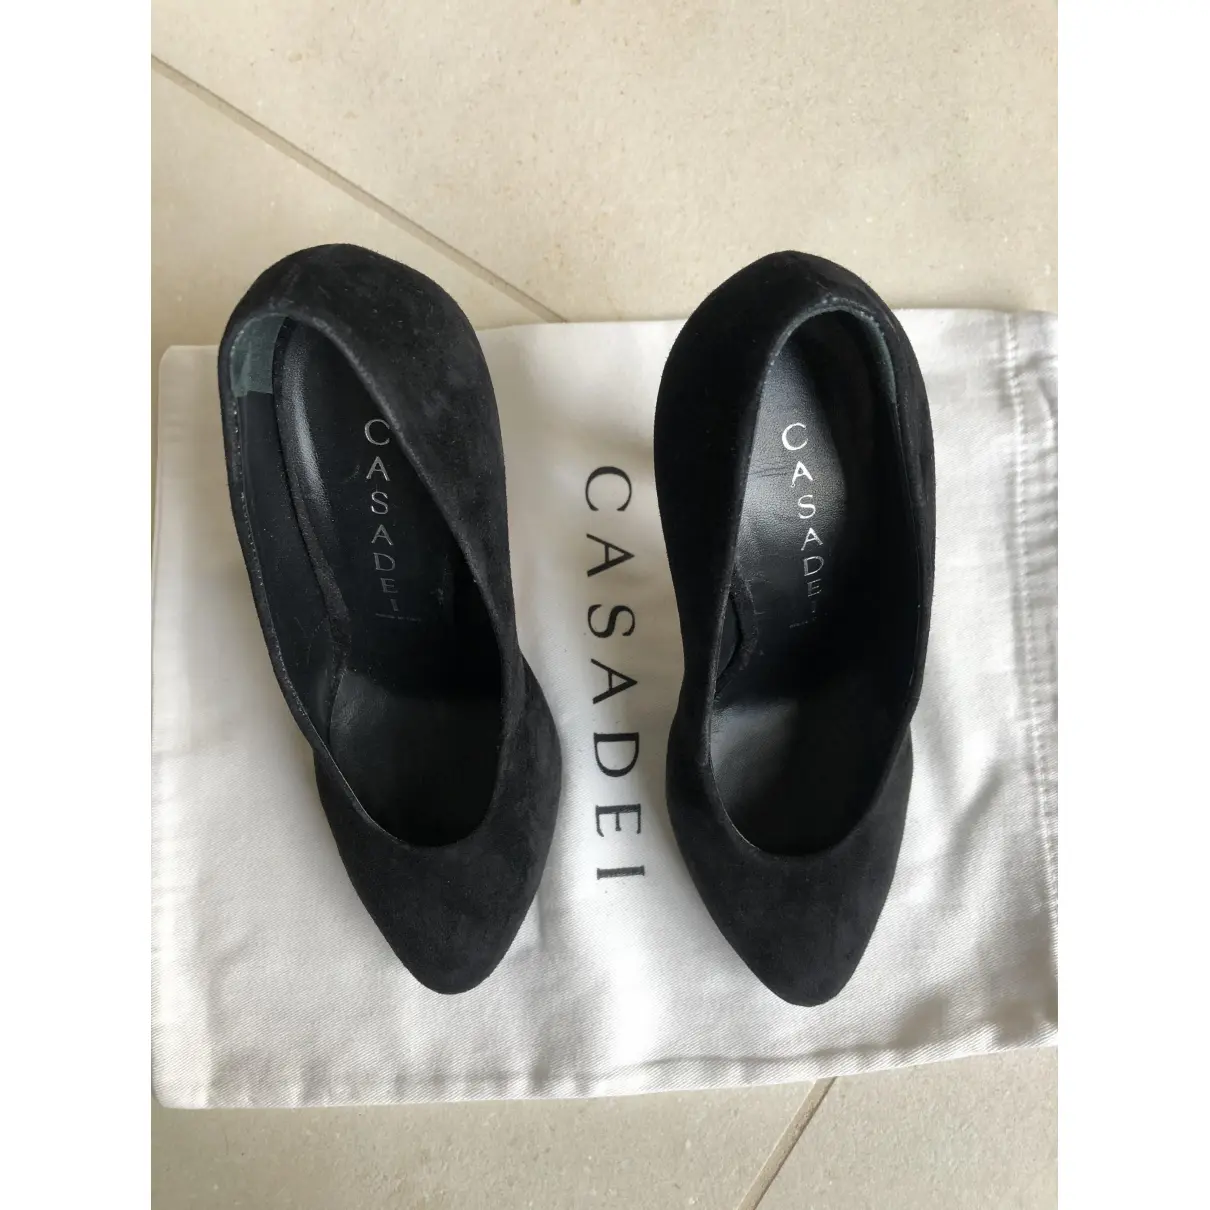 Buy Casadei Heels online